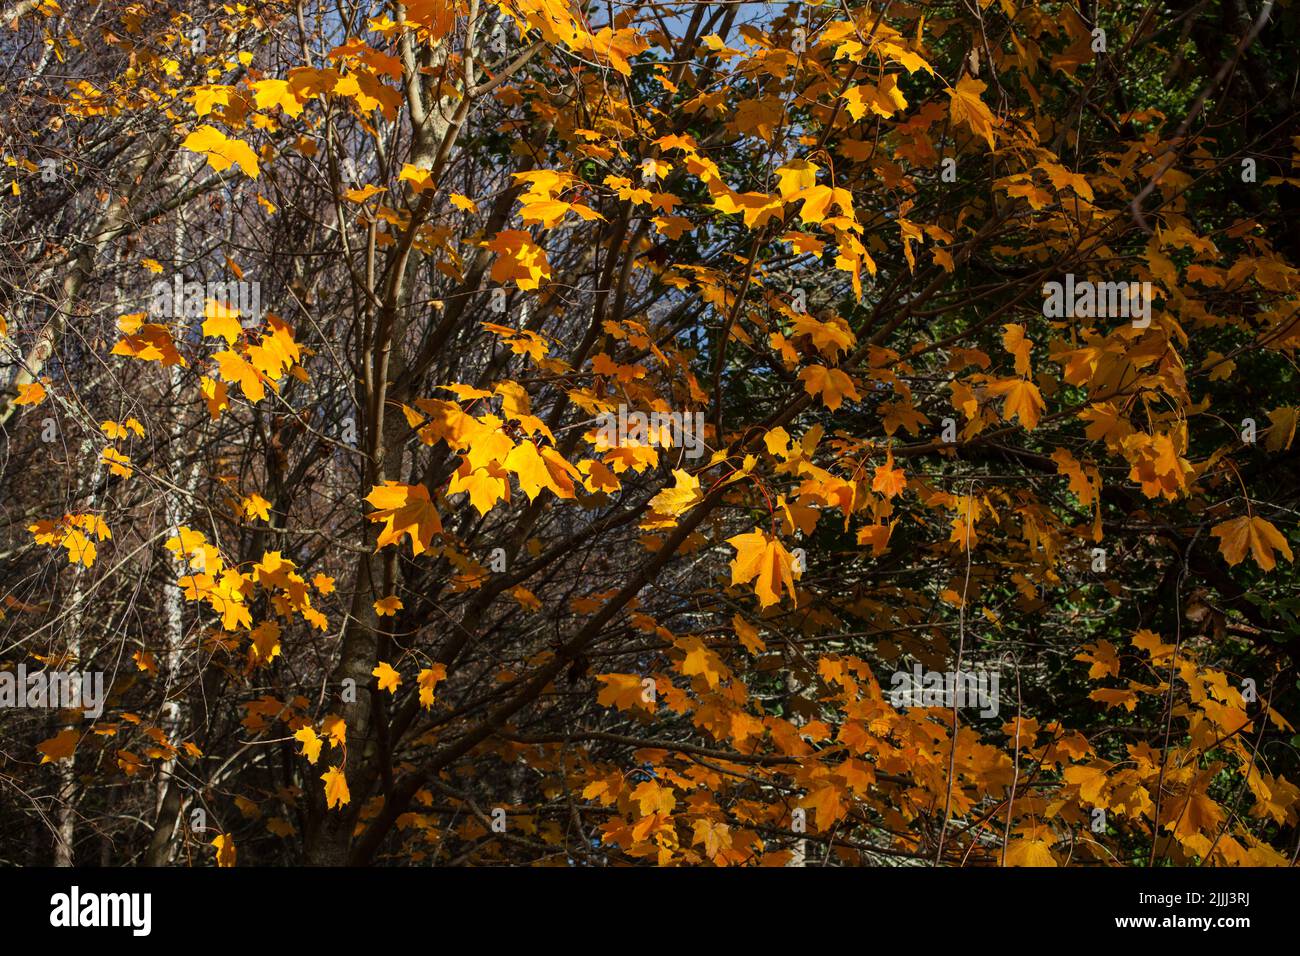 Ein Blick auf das Leben in Neuseeland: Ein Spaziergang im Wald im Herbst. Wunderbare Farben. Stockfoto